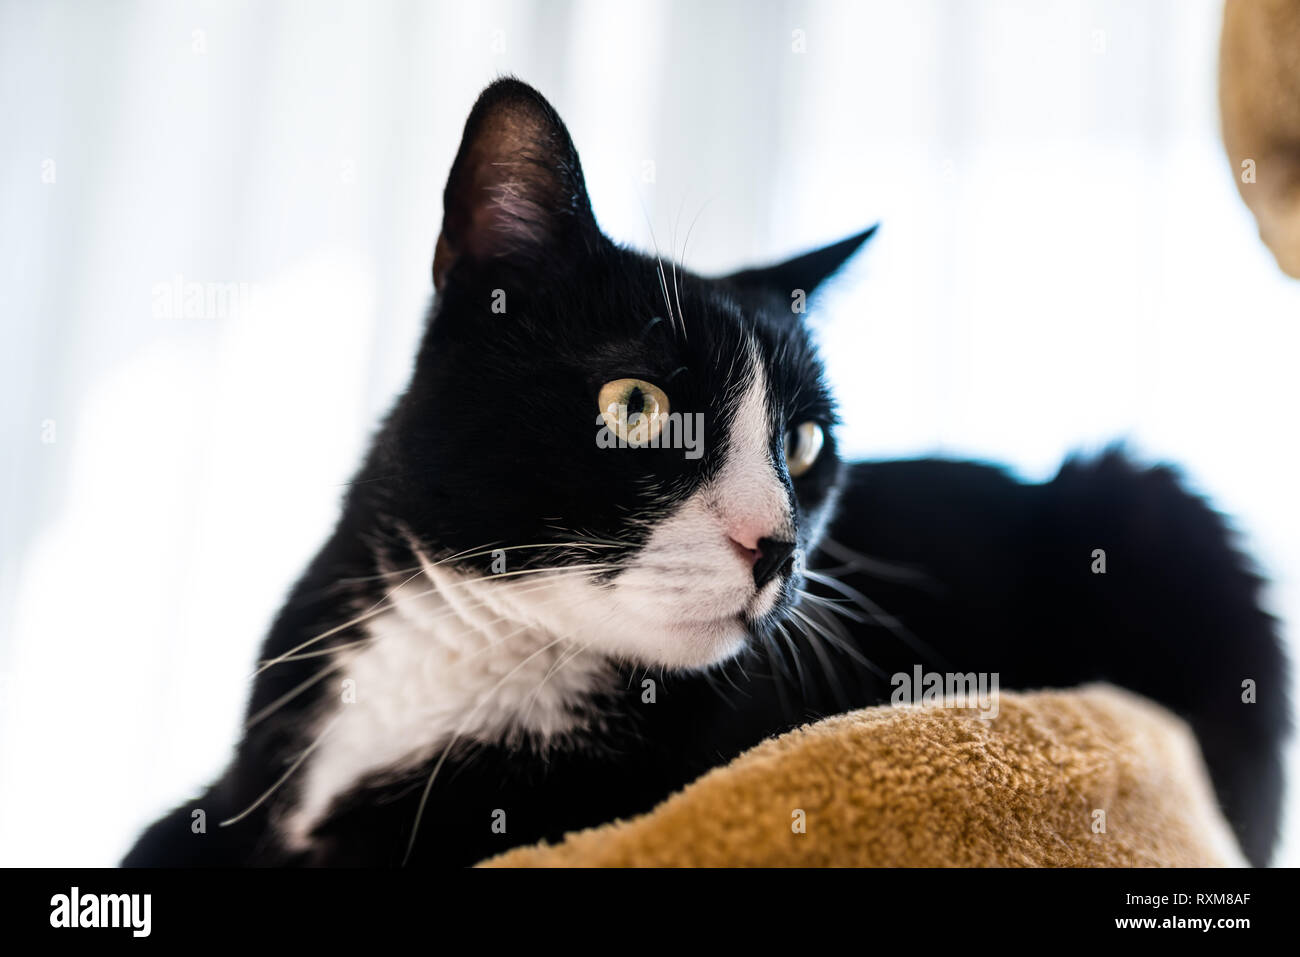 Un gatto nero con un bianco e nero muso, giace su un marrone, cat scratcher all'interno della casa. Foto Stock